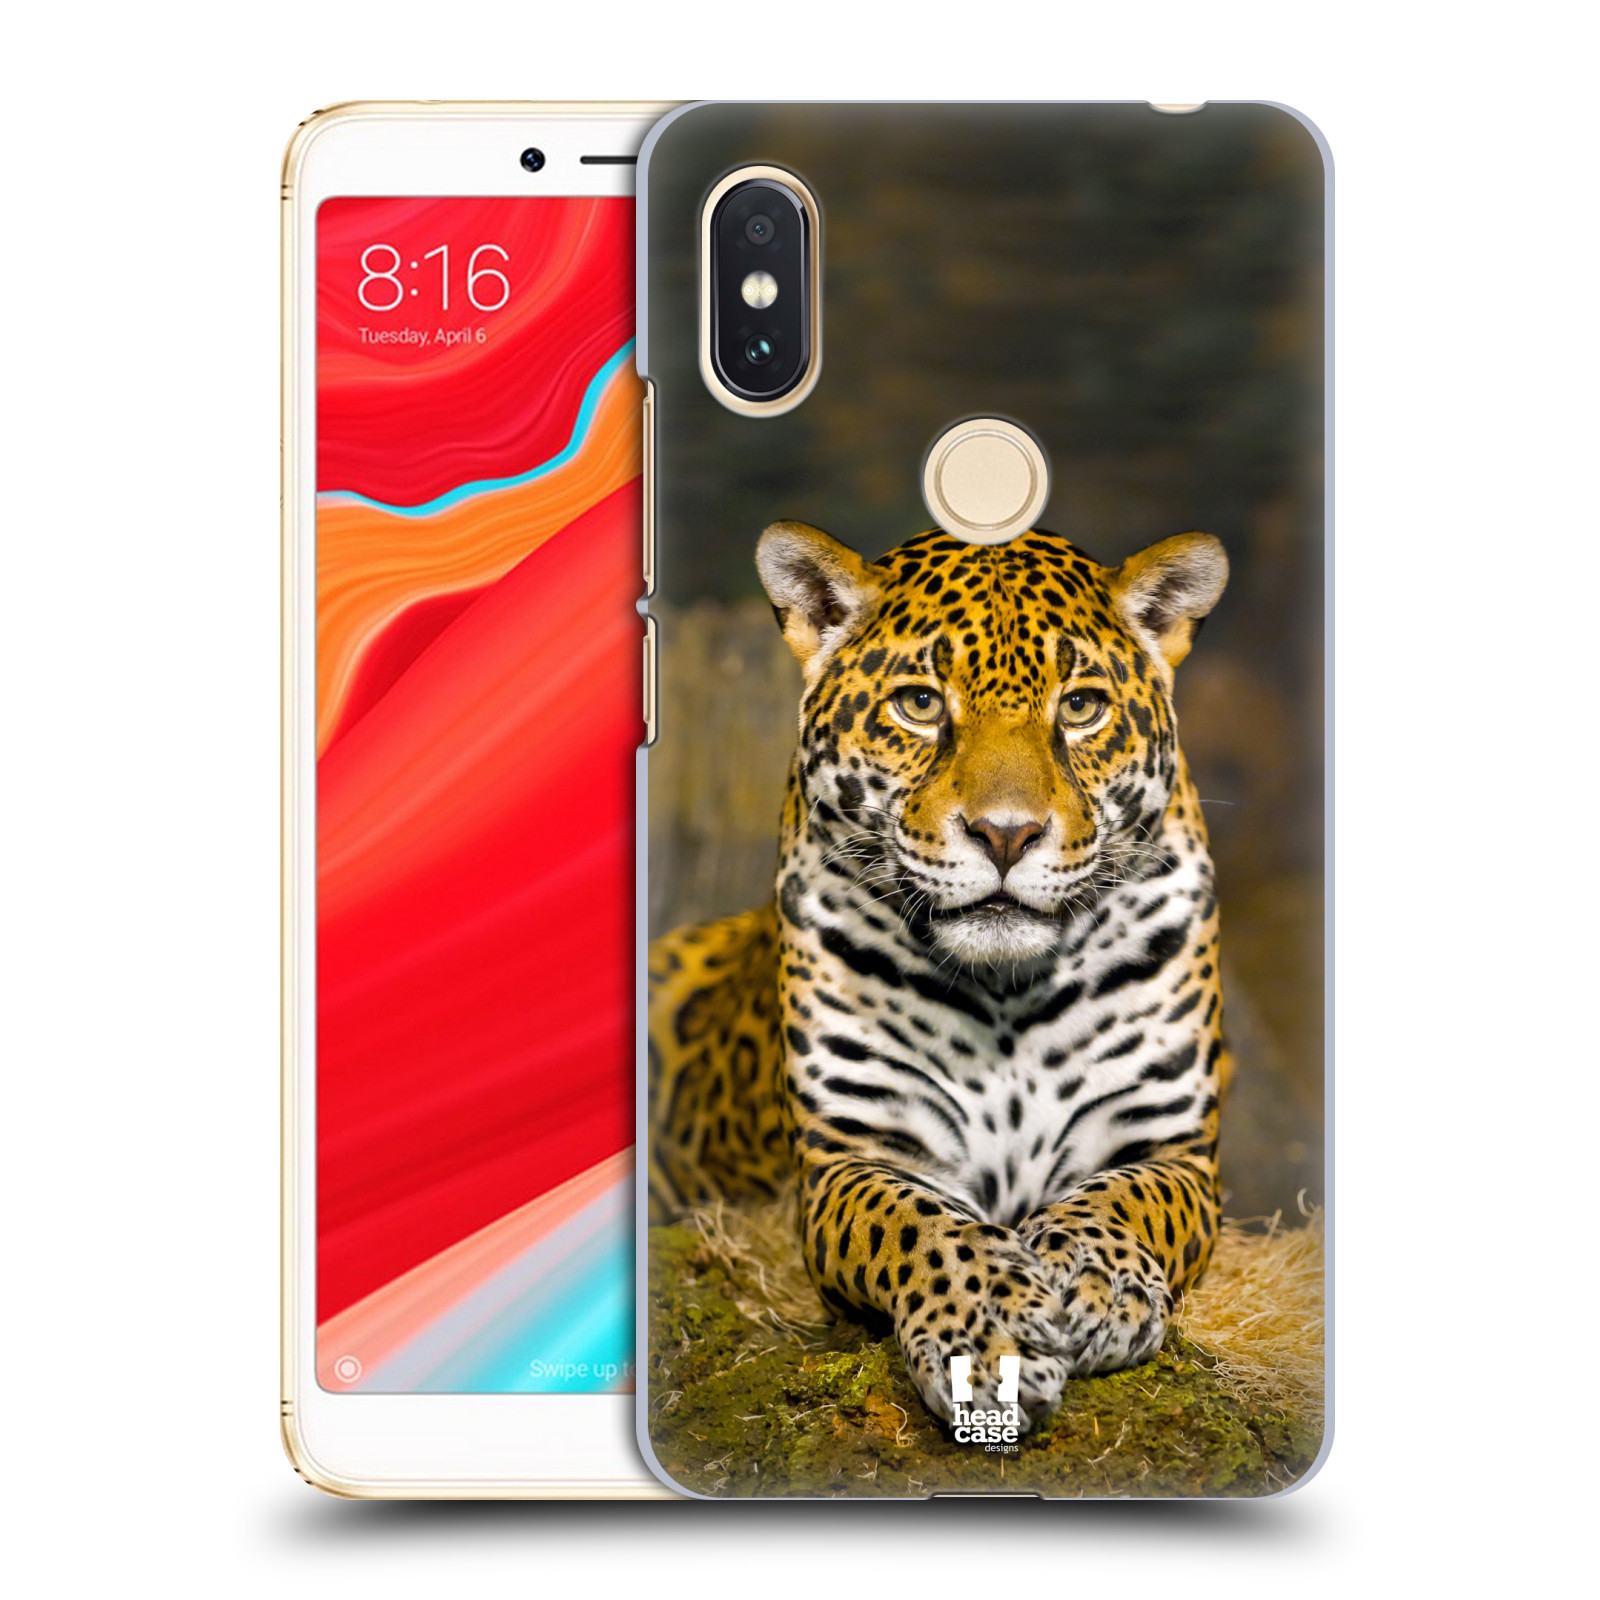 HEAD CASE plastový obal na mobil Xiaomi Redmi S2 vzor slavná zvířata foto jaguár